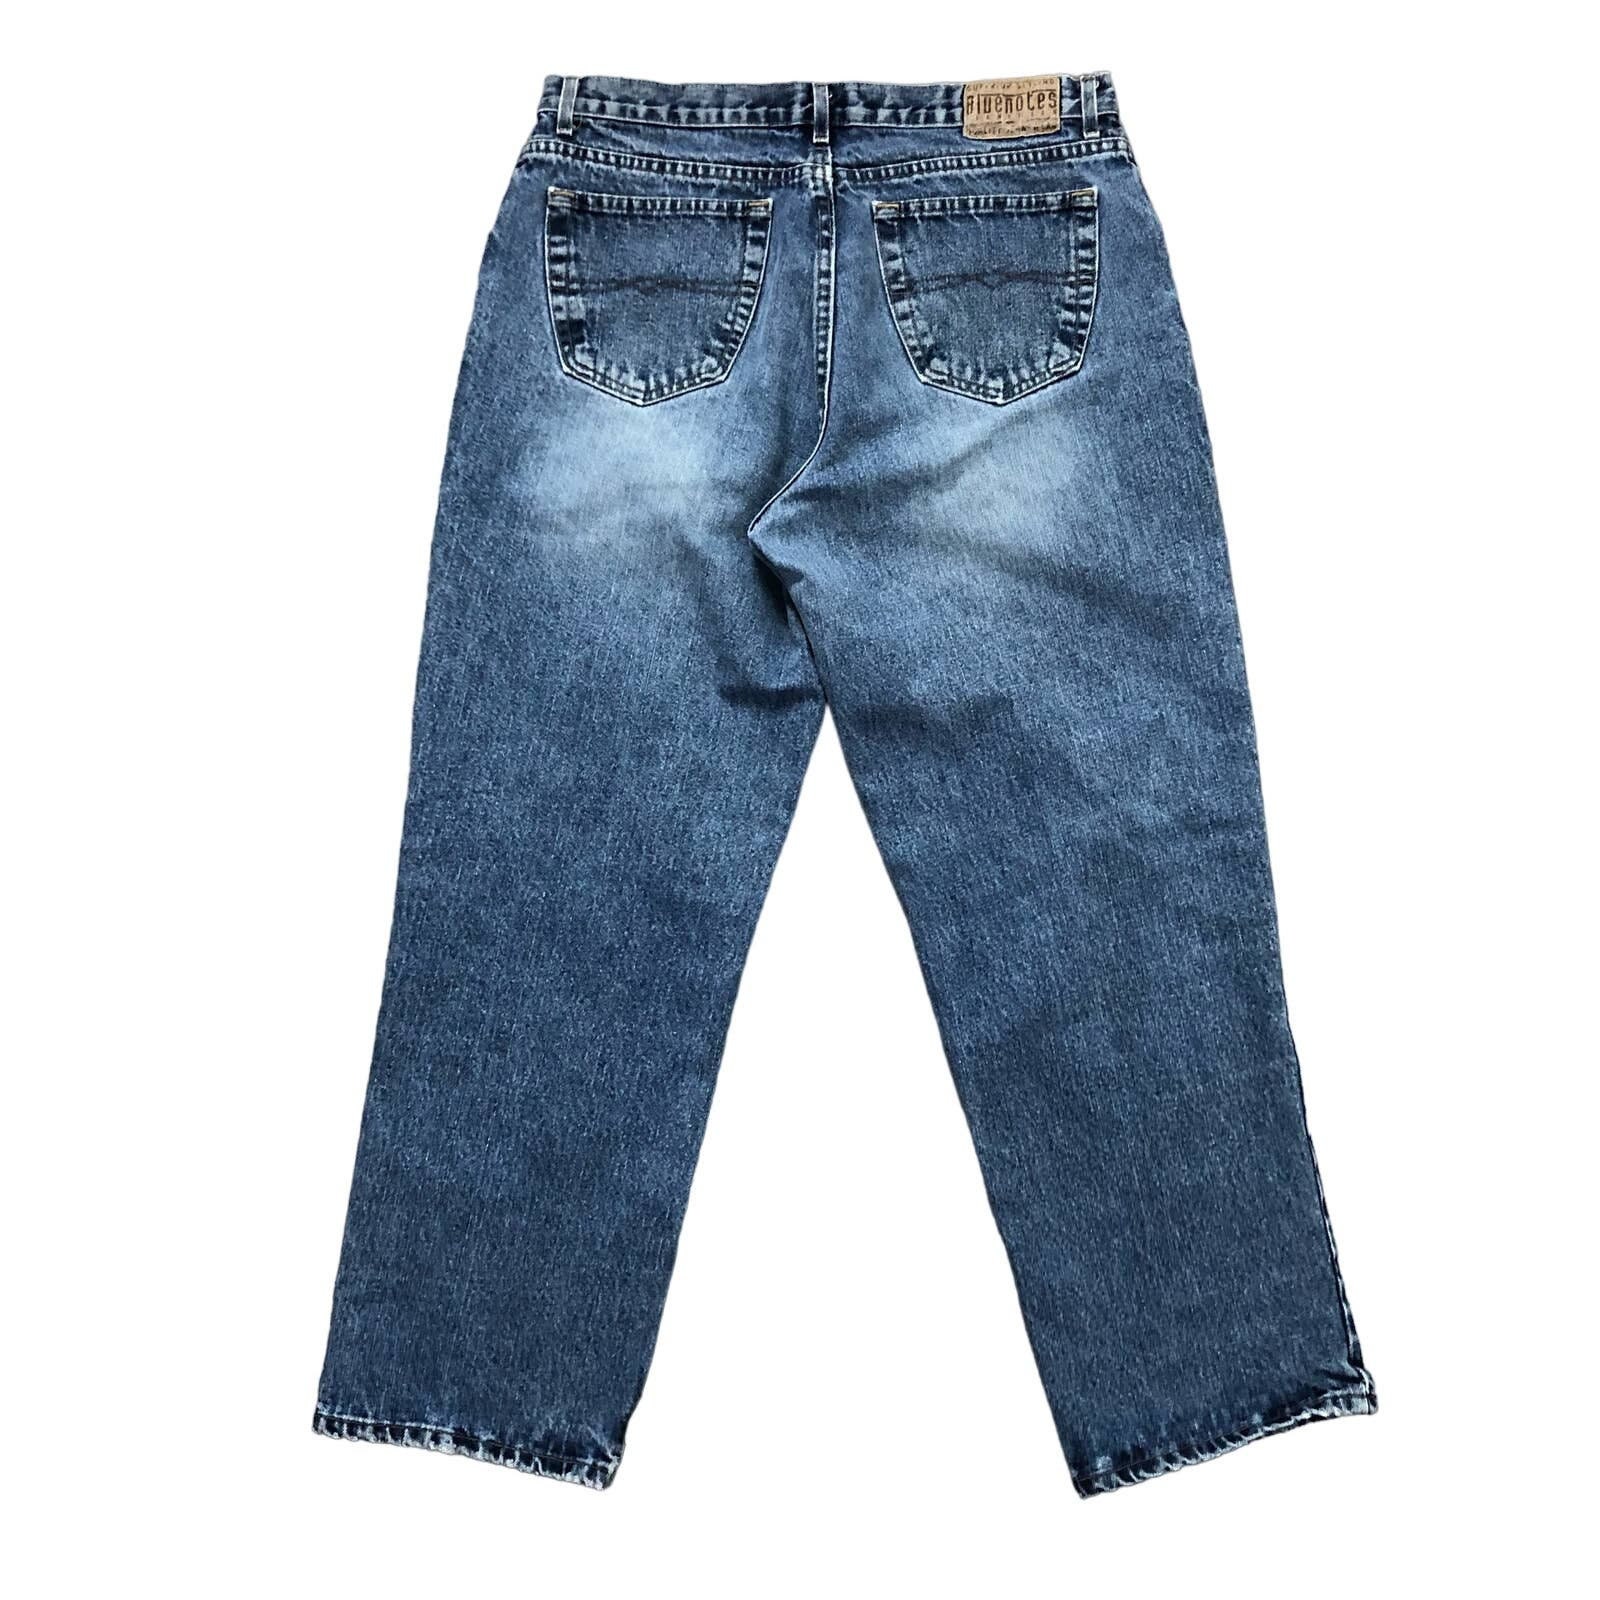 Harem Jeans Unisex Upcycled Clothing Size 29 With Elastic 